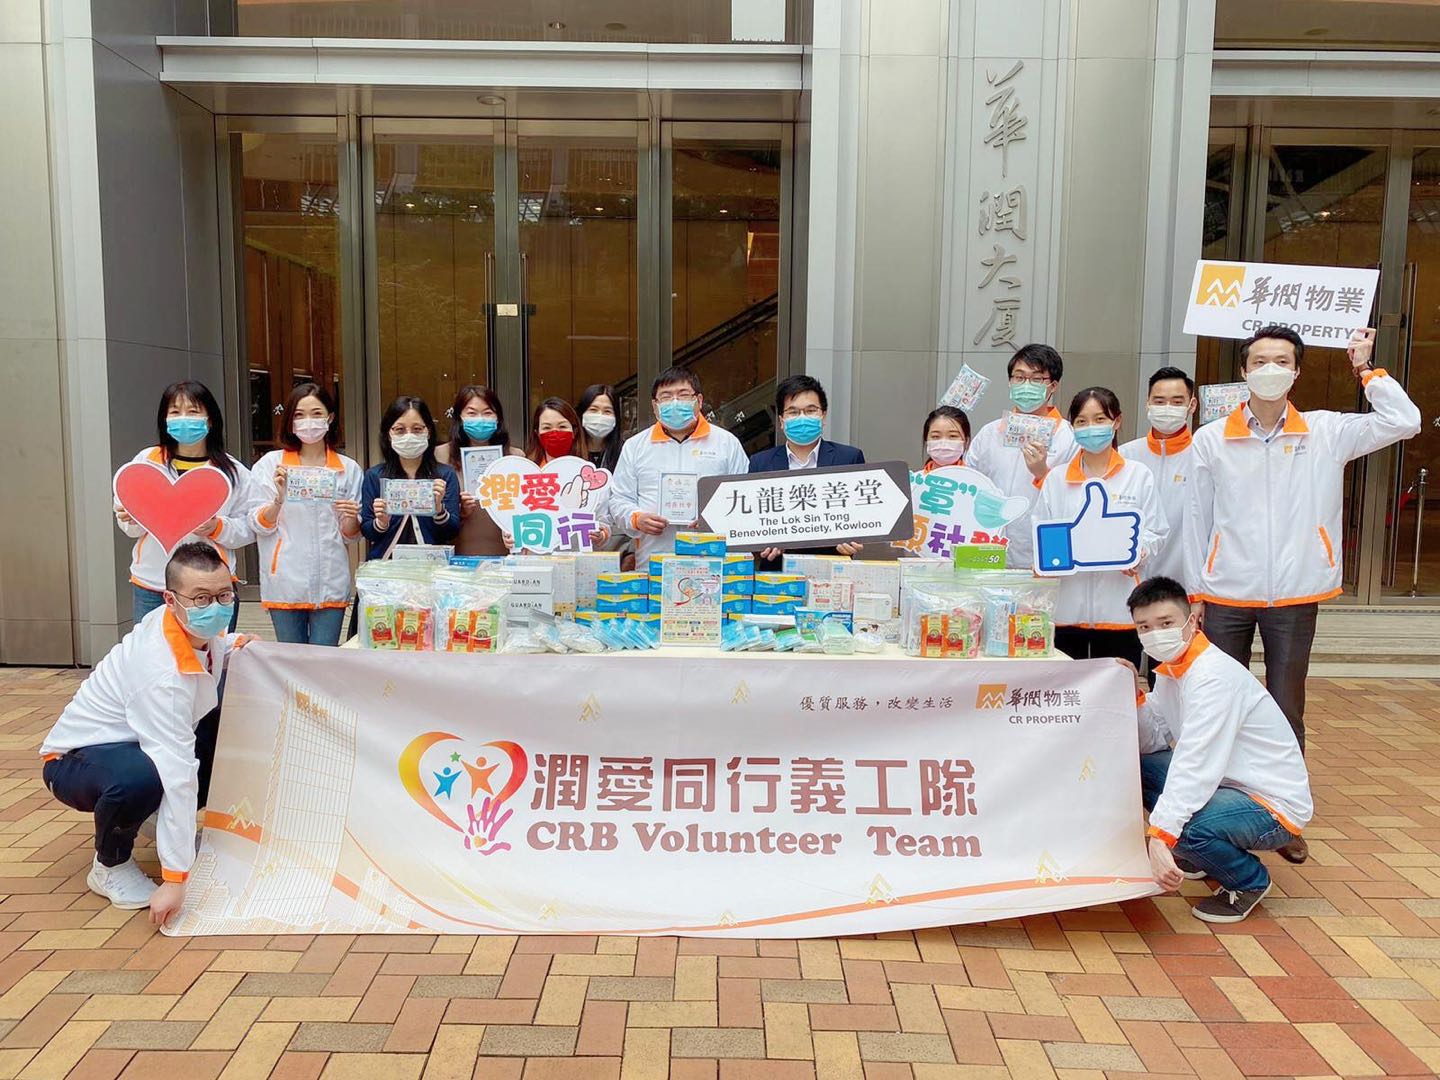 支援防疫抗灾 我们在行动-中国社会福利基金会